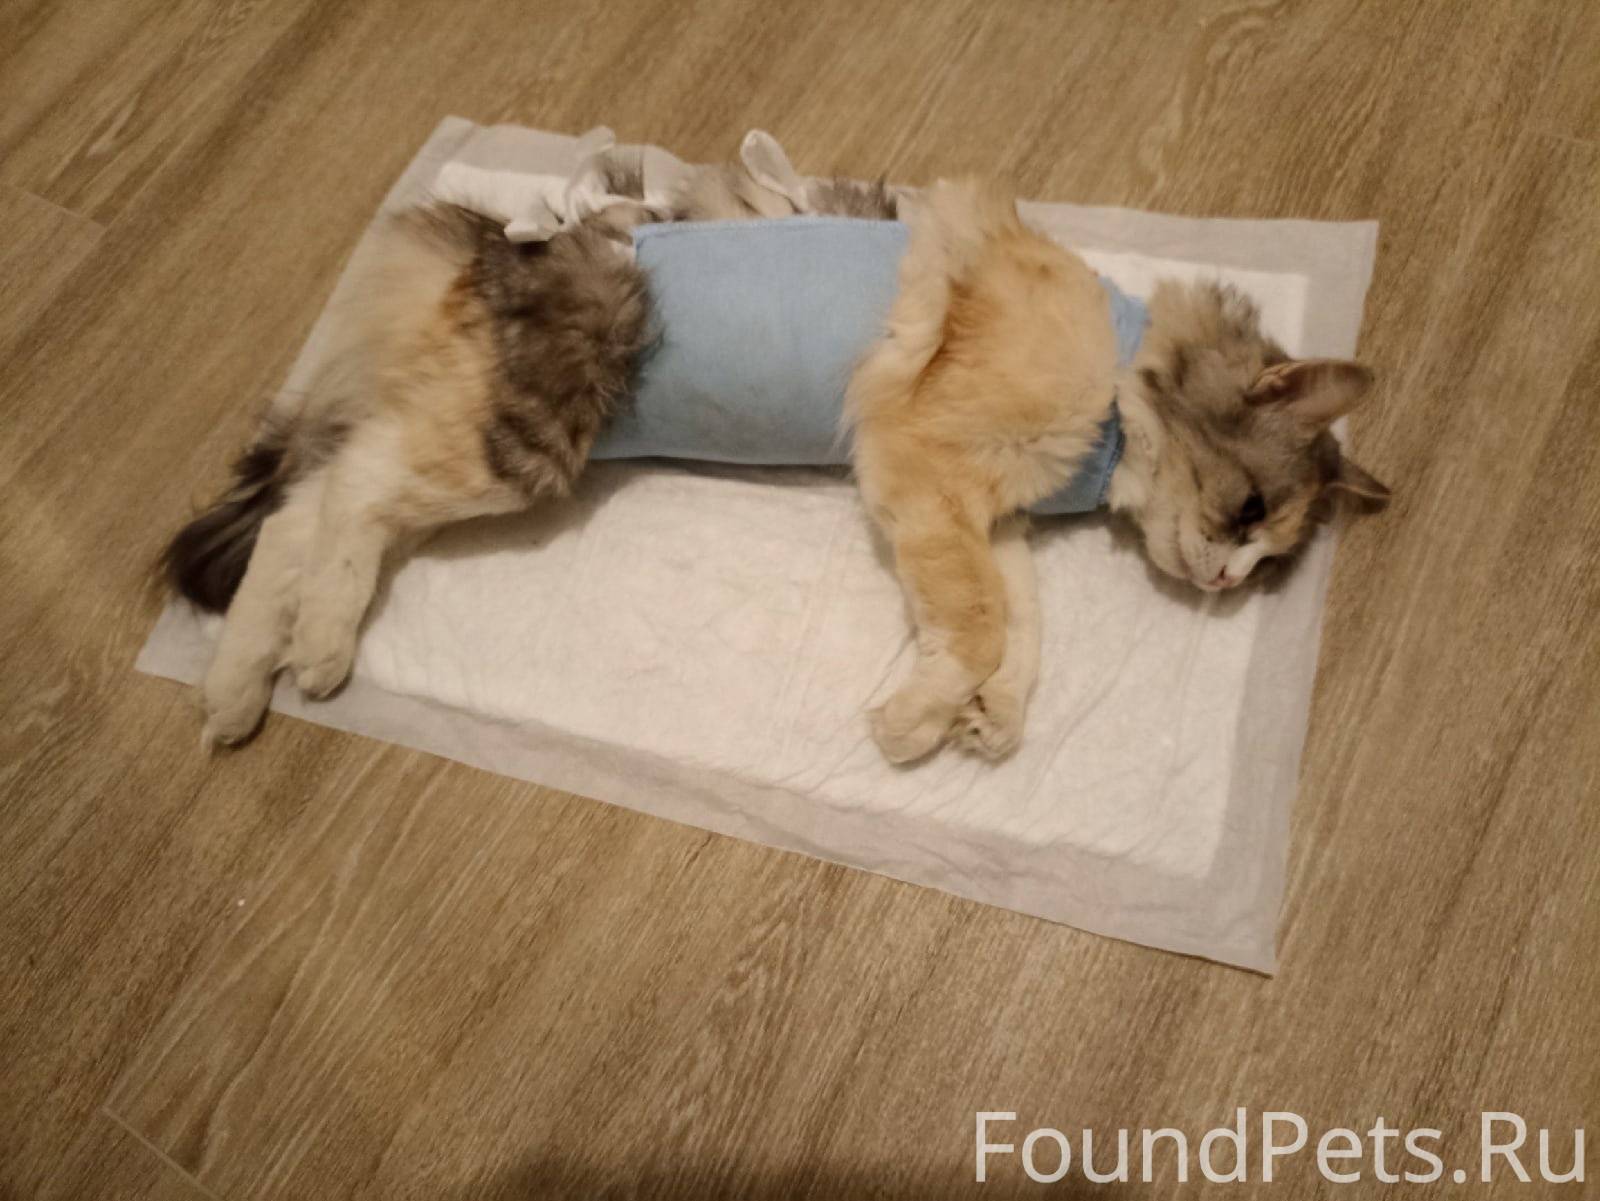 Кошка после стерилизации упала с дивана